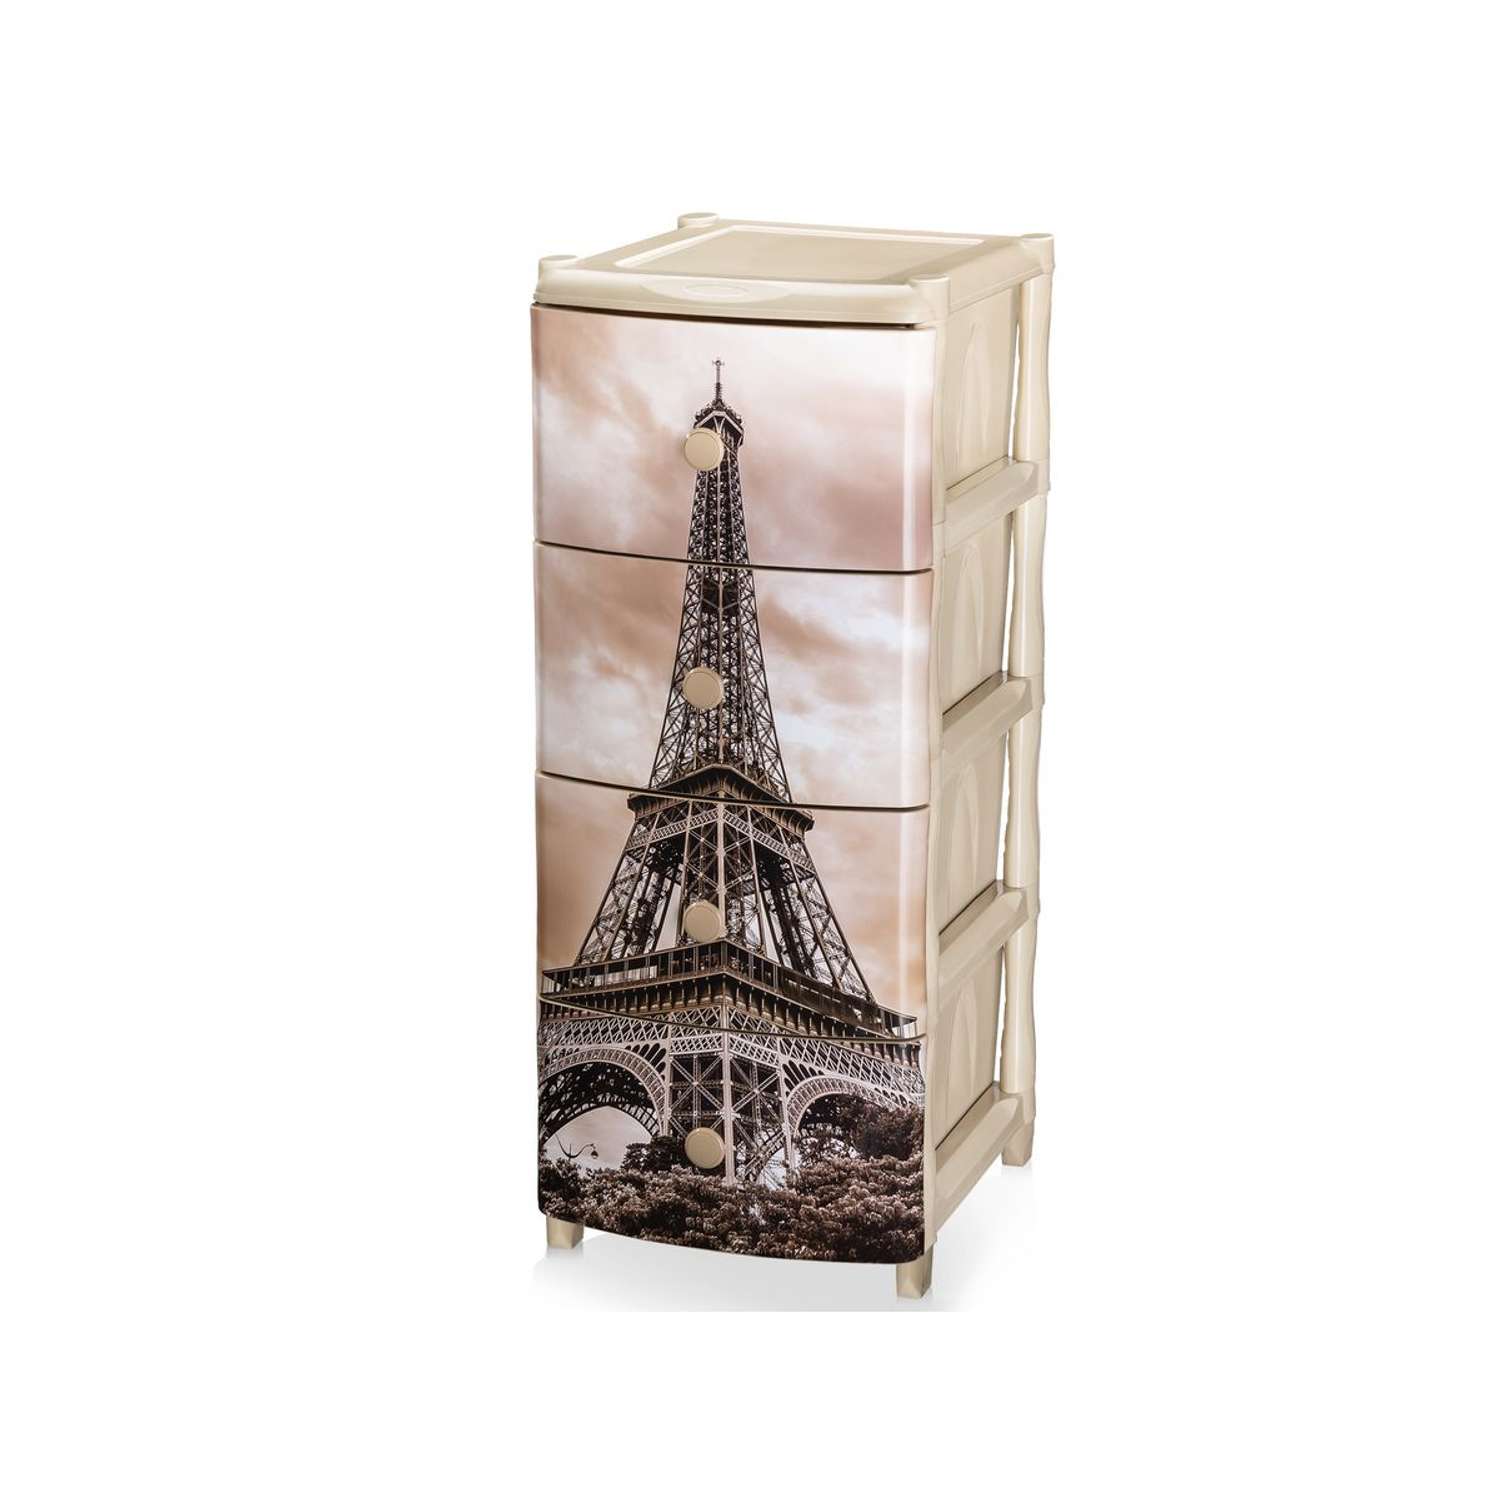 Комод универсальный с ящиками elfplast №1 цвет-серо-коричневый рисунок Эйфелева башня - фото 4